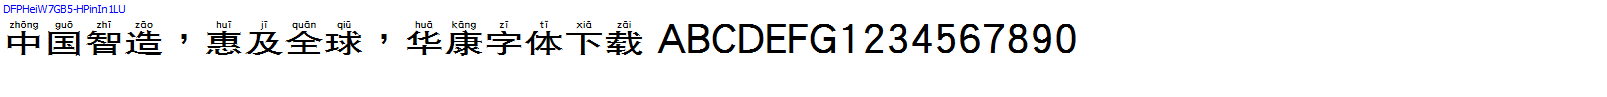 華康字體DFPHeiW7GB5-HPinIn1LU.TTF